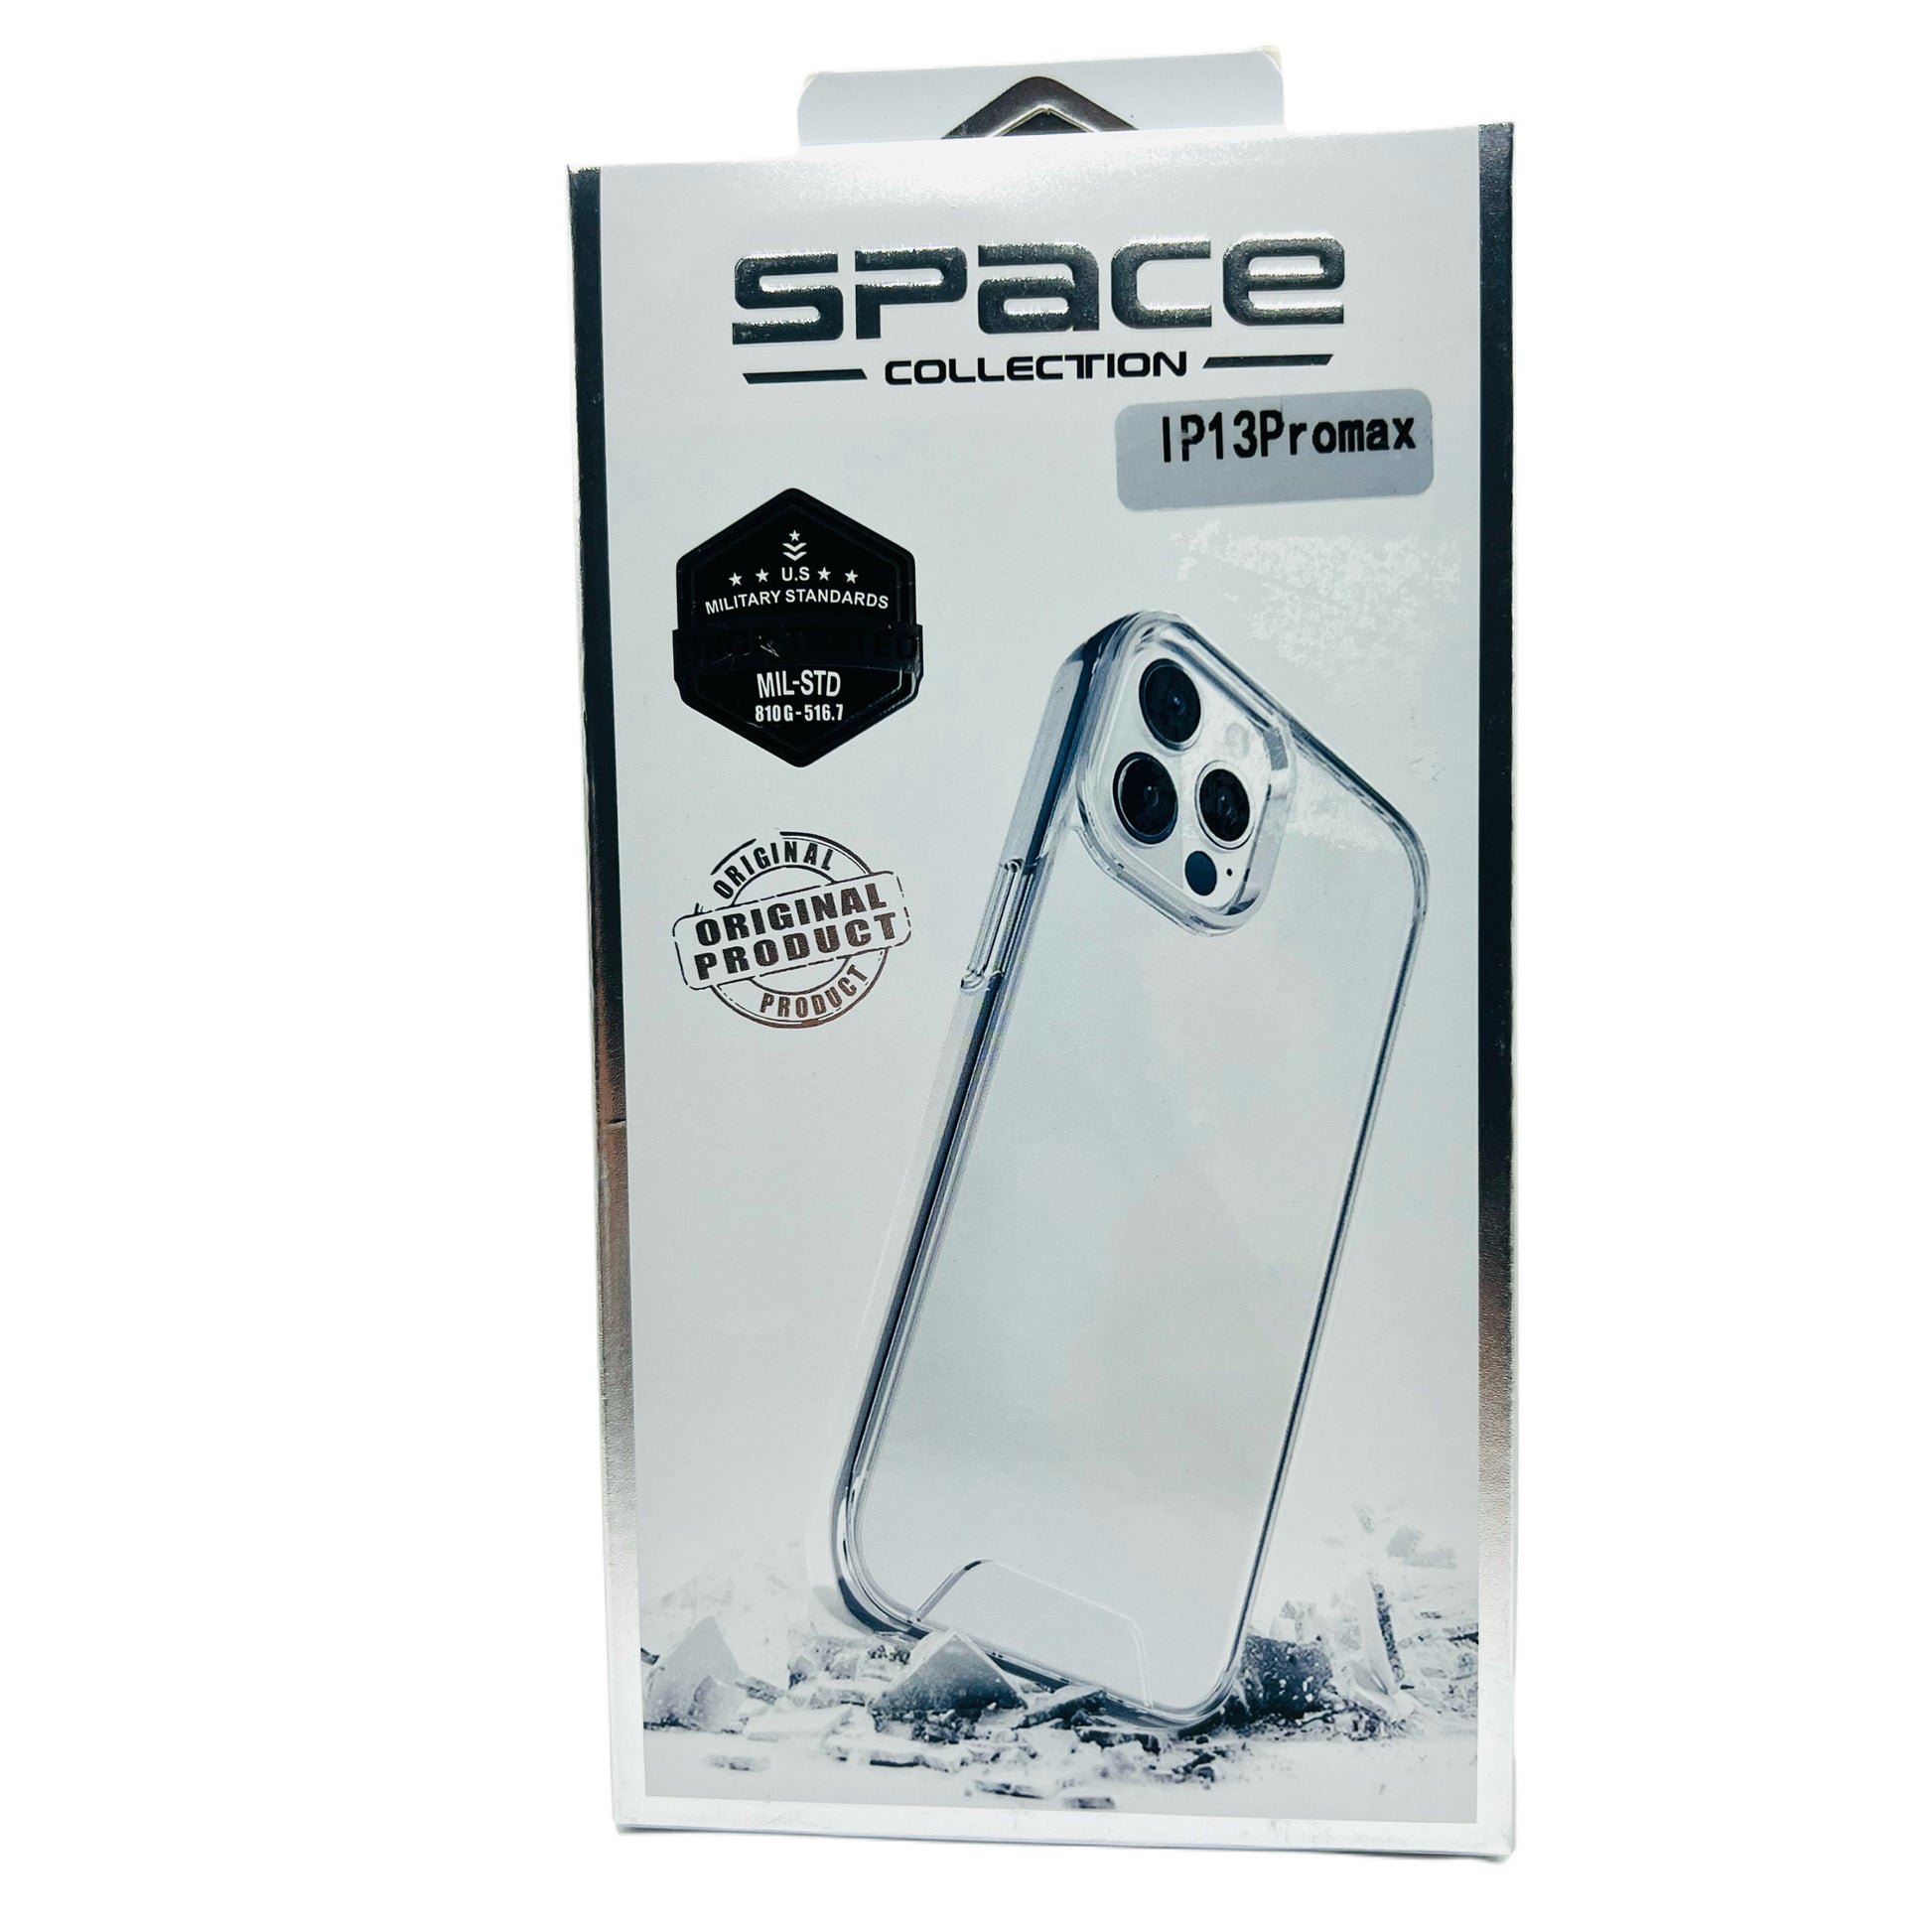 Case Space + Protector de Pantalla + Mica para Cámara para iPhone